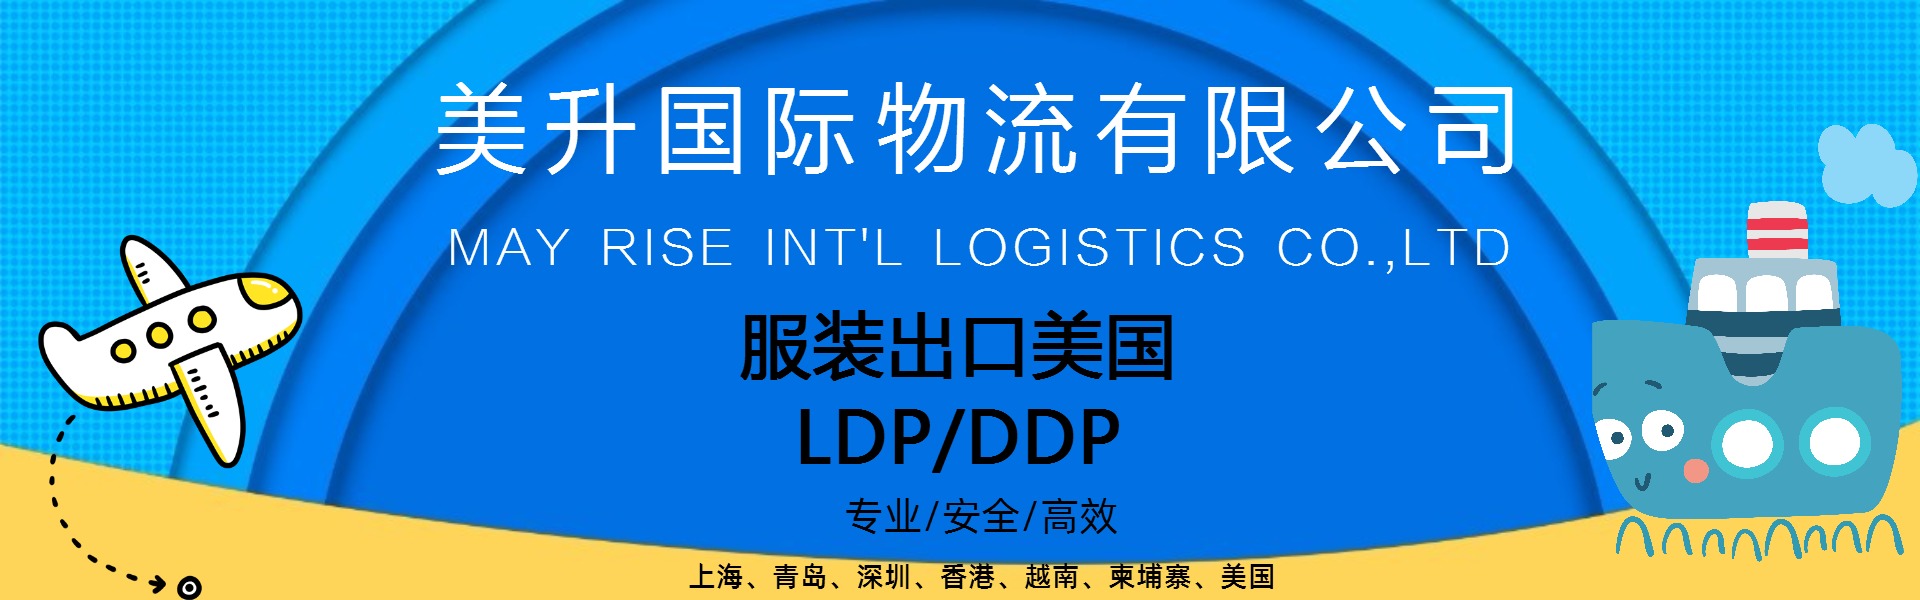 中国 越南 柬埔寨 服装 箱包 出口美国LDP DDP服务